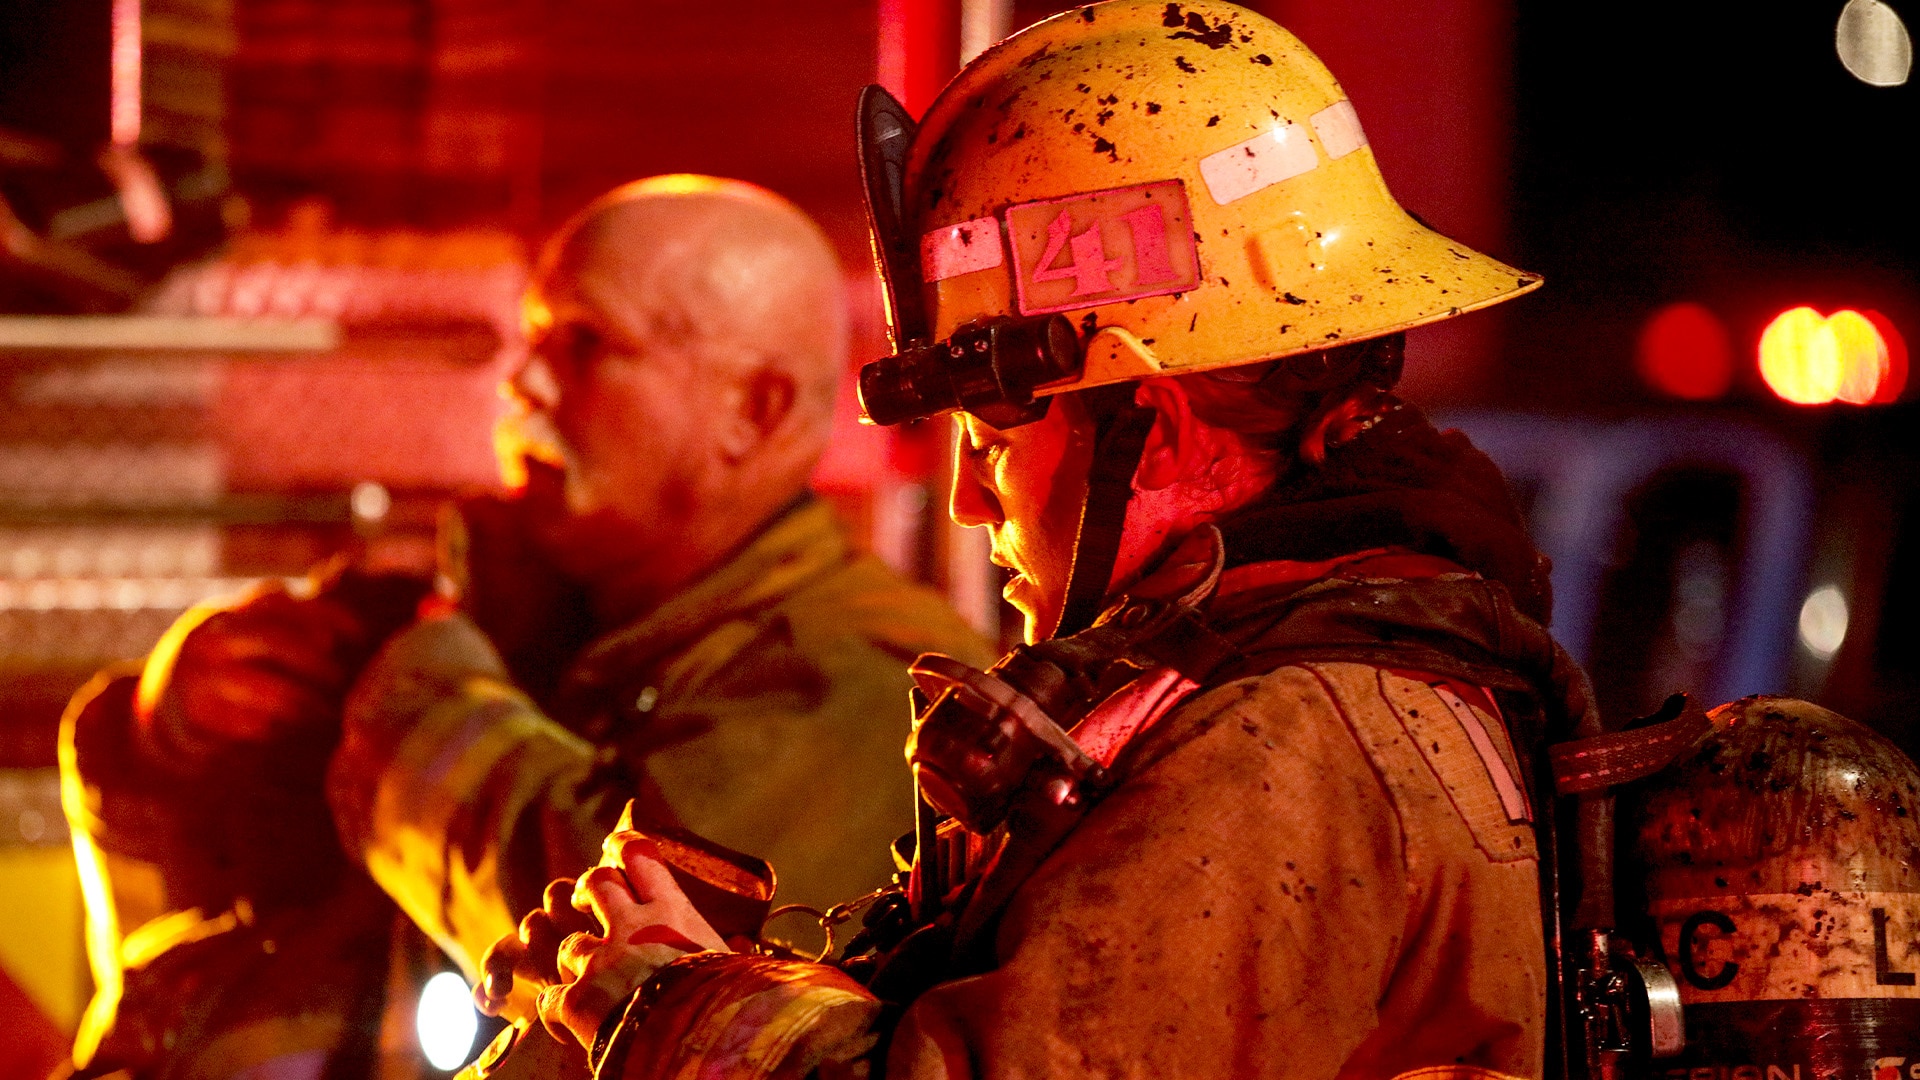 Watch Trailer for NBC Docuseries 'LA Fire & Rescue